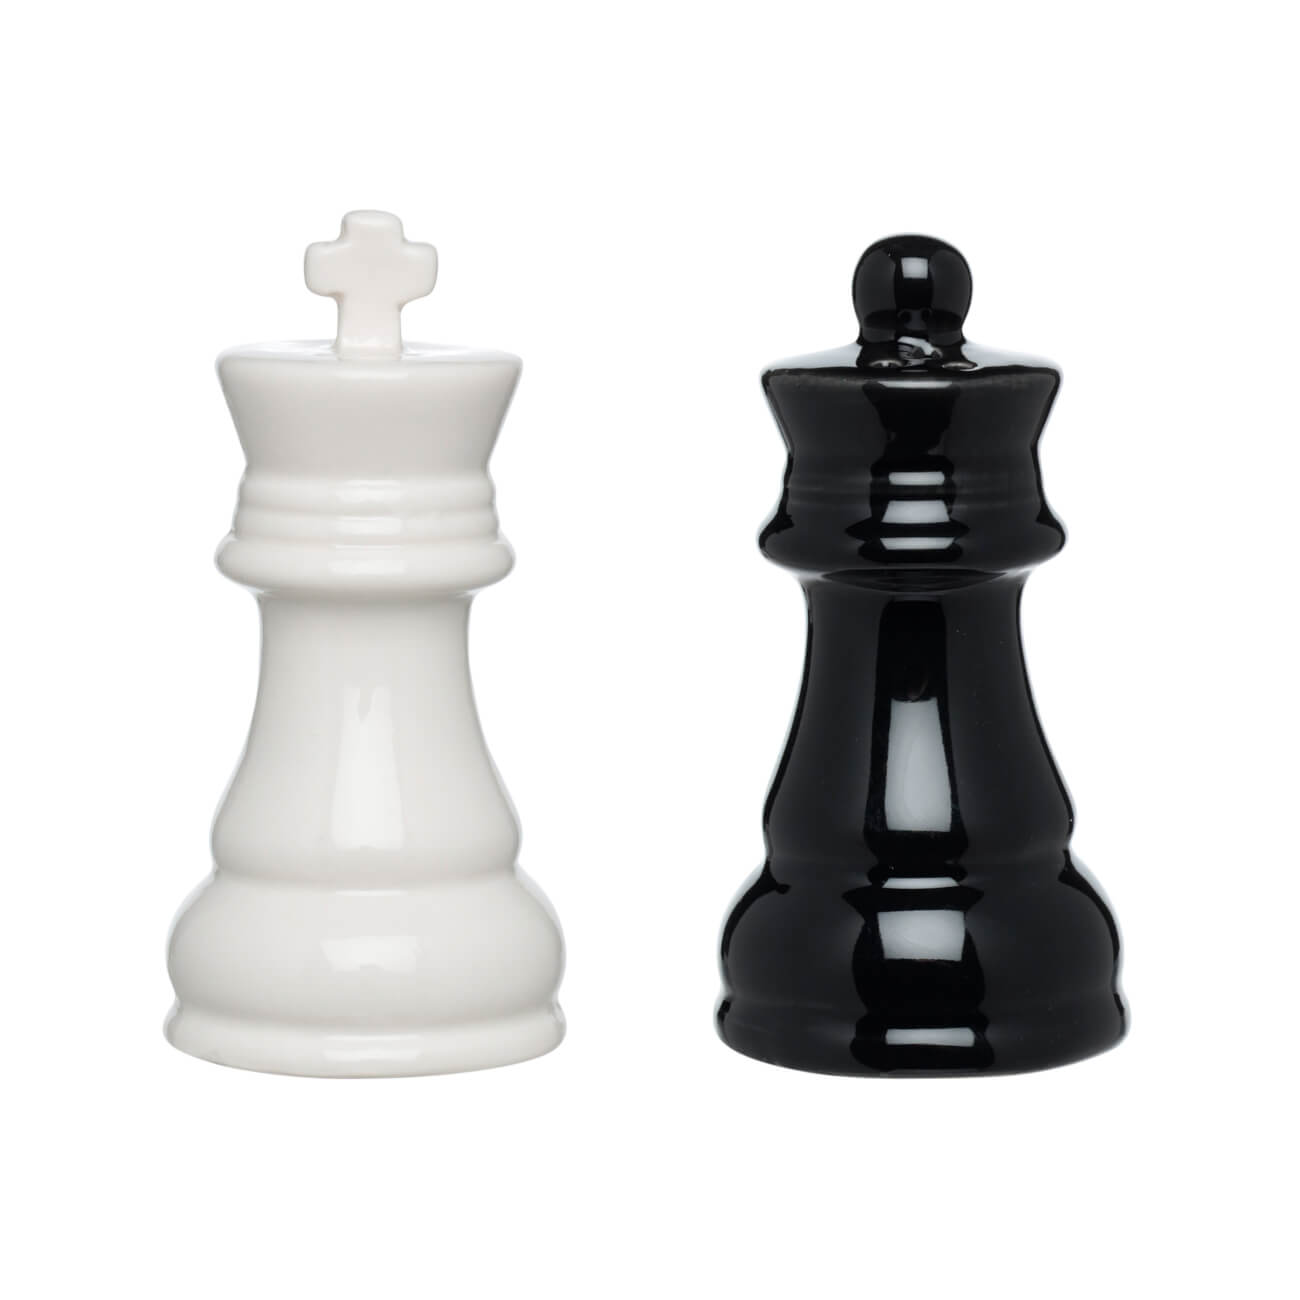 Набор для соли и перца, 9 см, фарфор P, черный/белый, Шахматы, Chess осада или шахматы со смертью